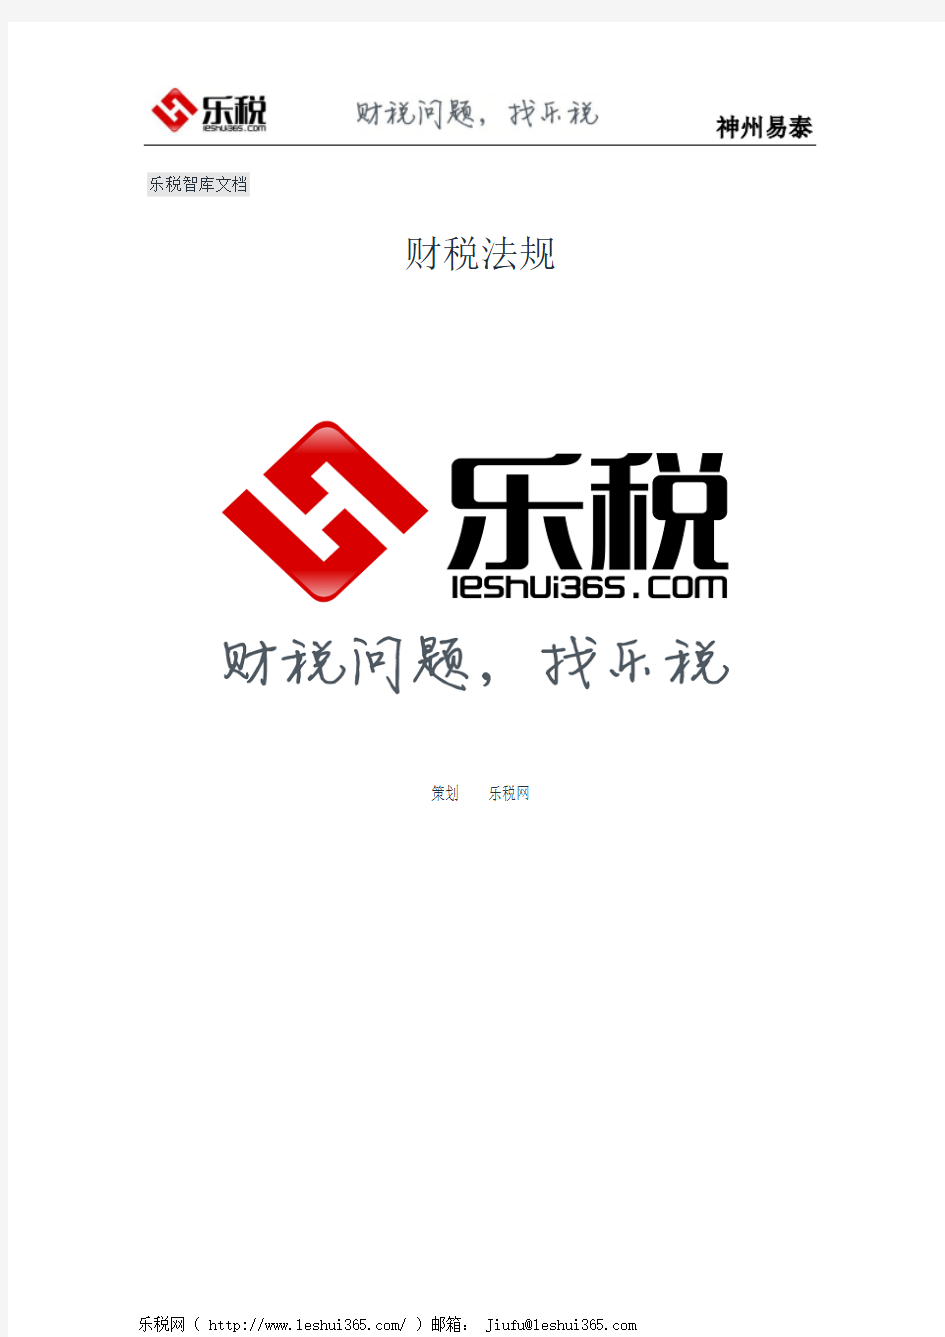 北京市地方税务局转发国家税务总局关于征收机关直接征收契税的通知